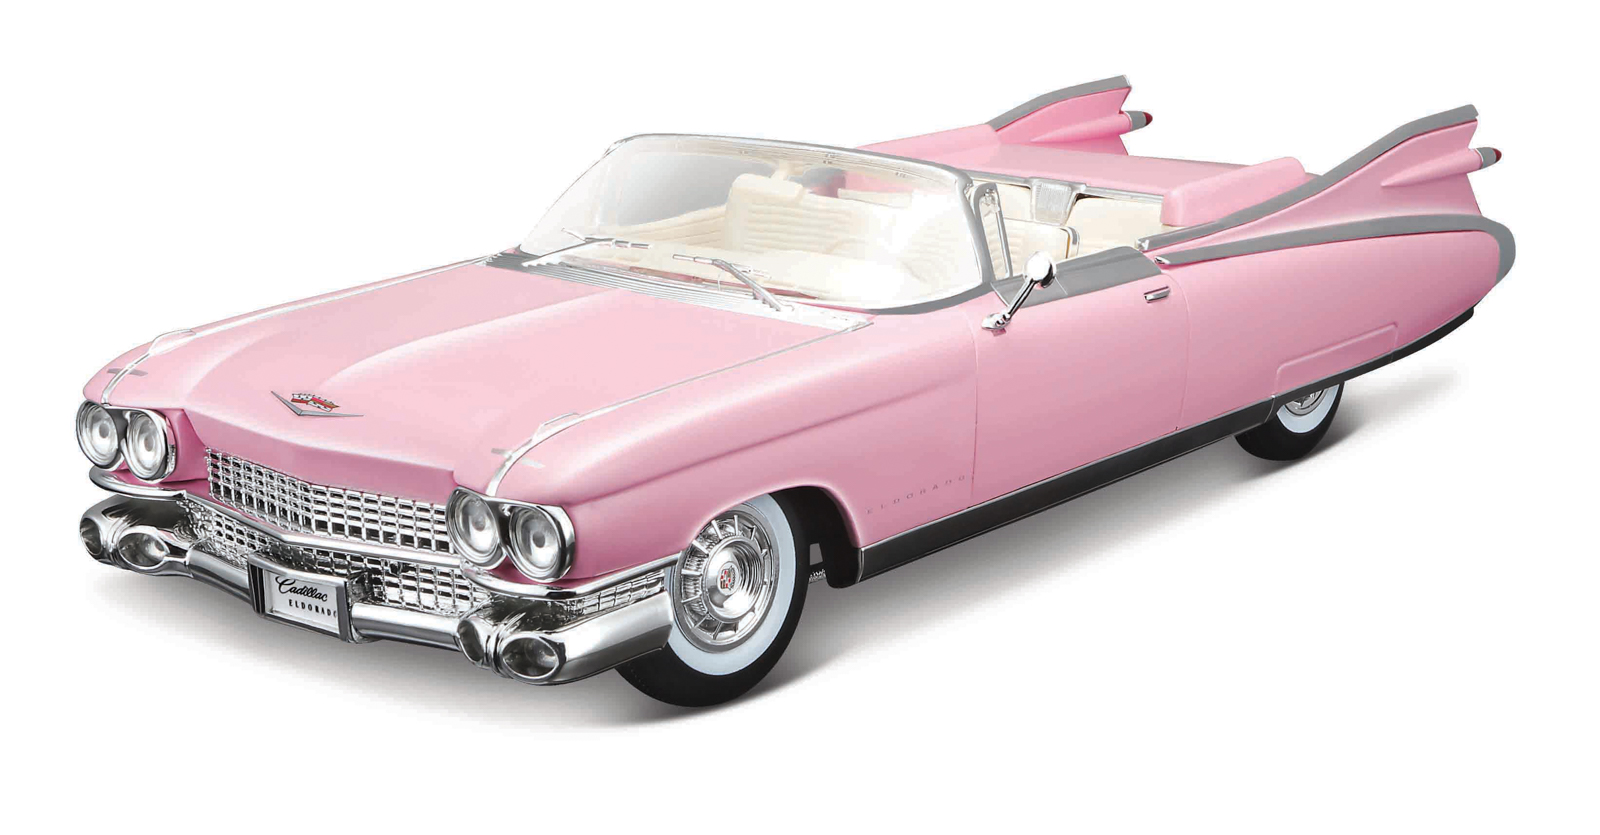 Maisto - 1959 Cadillac Eldorado Biarritz, ružový, 1:18